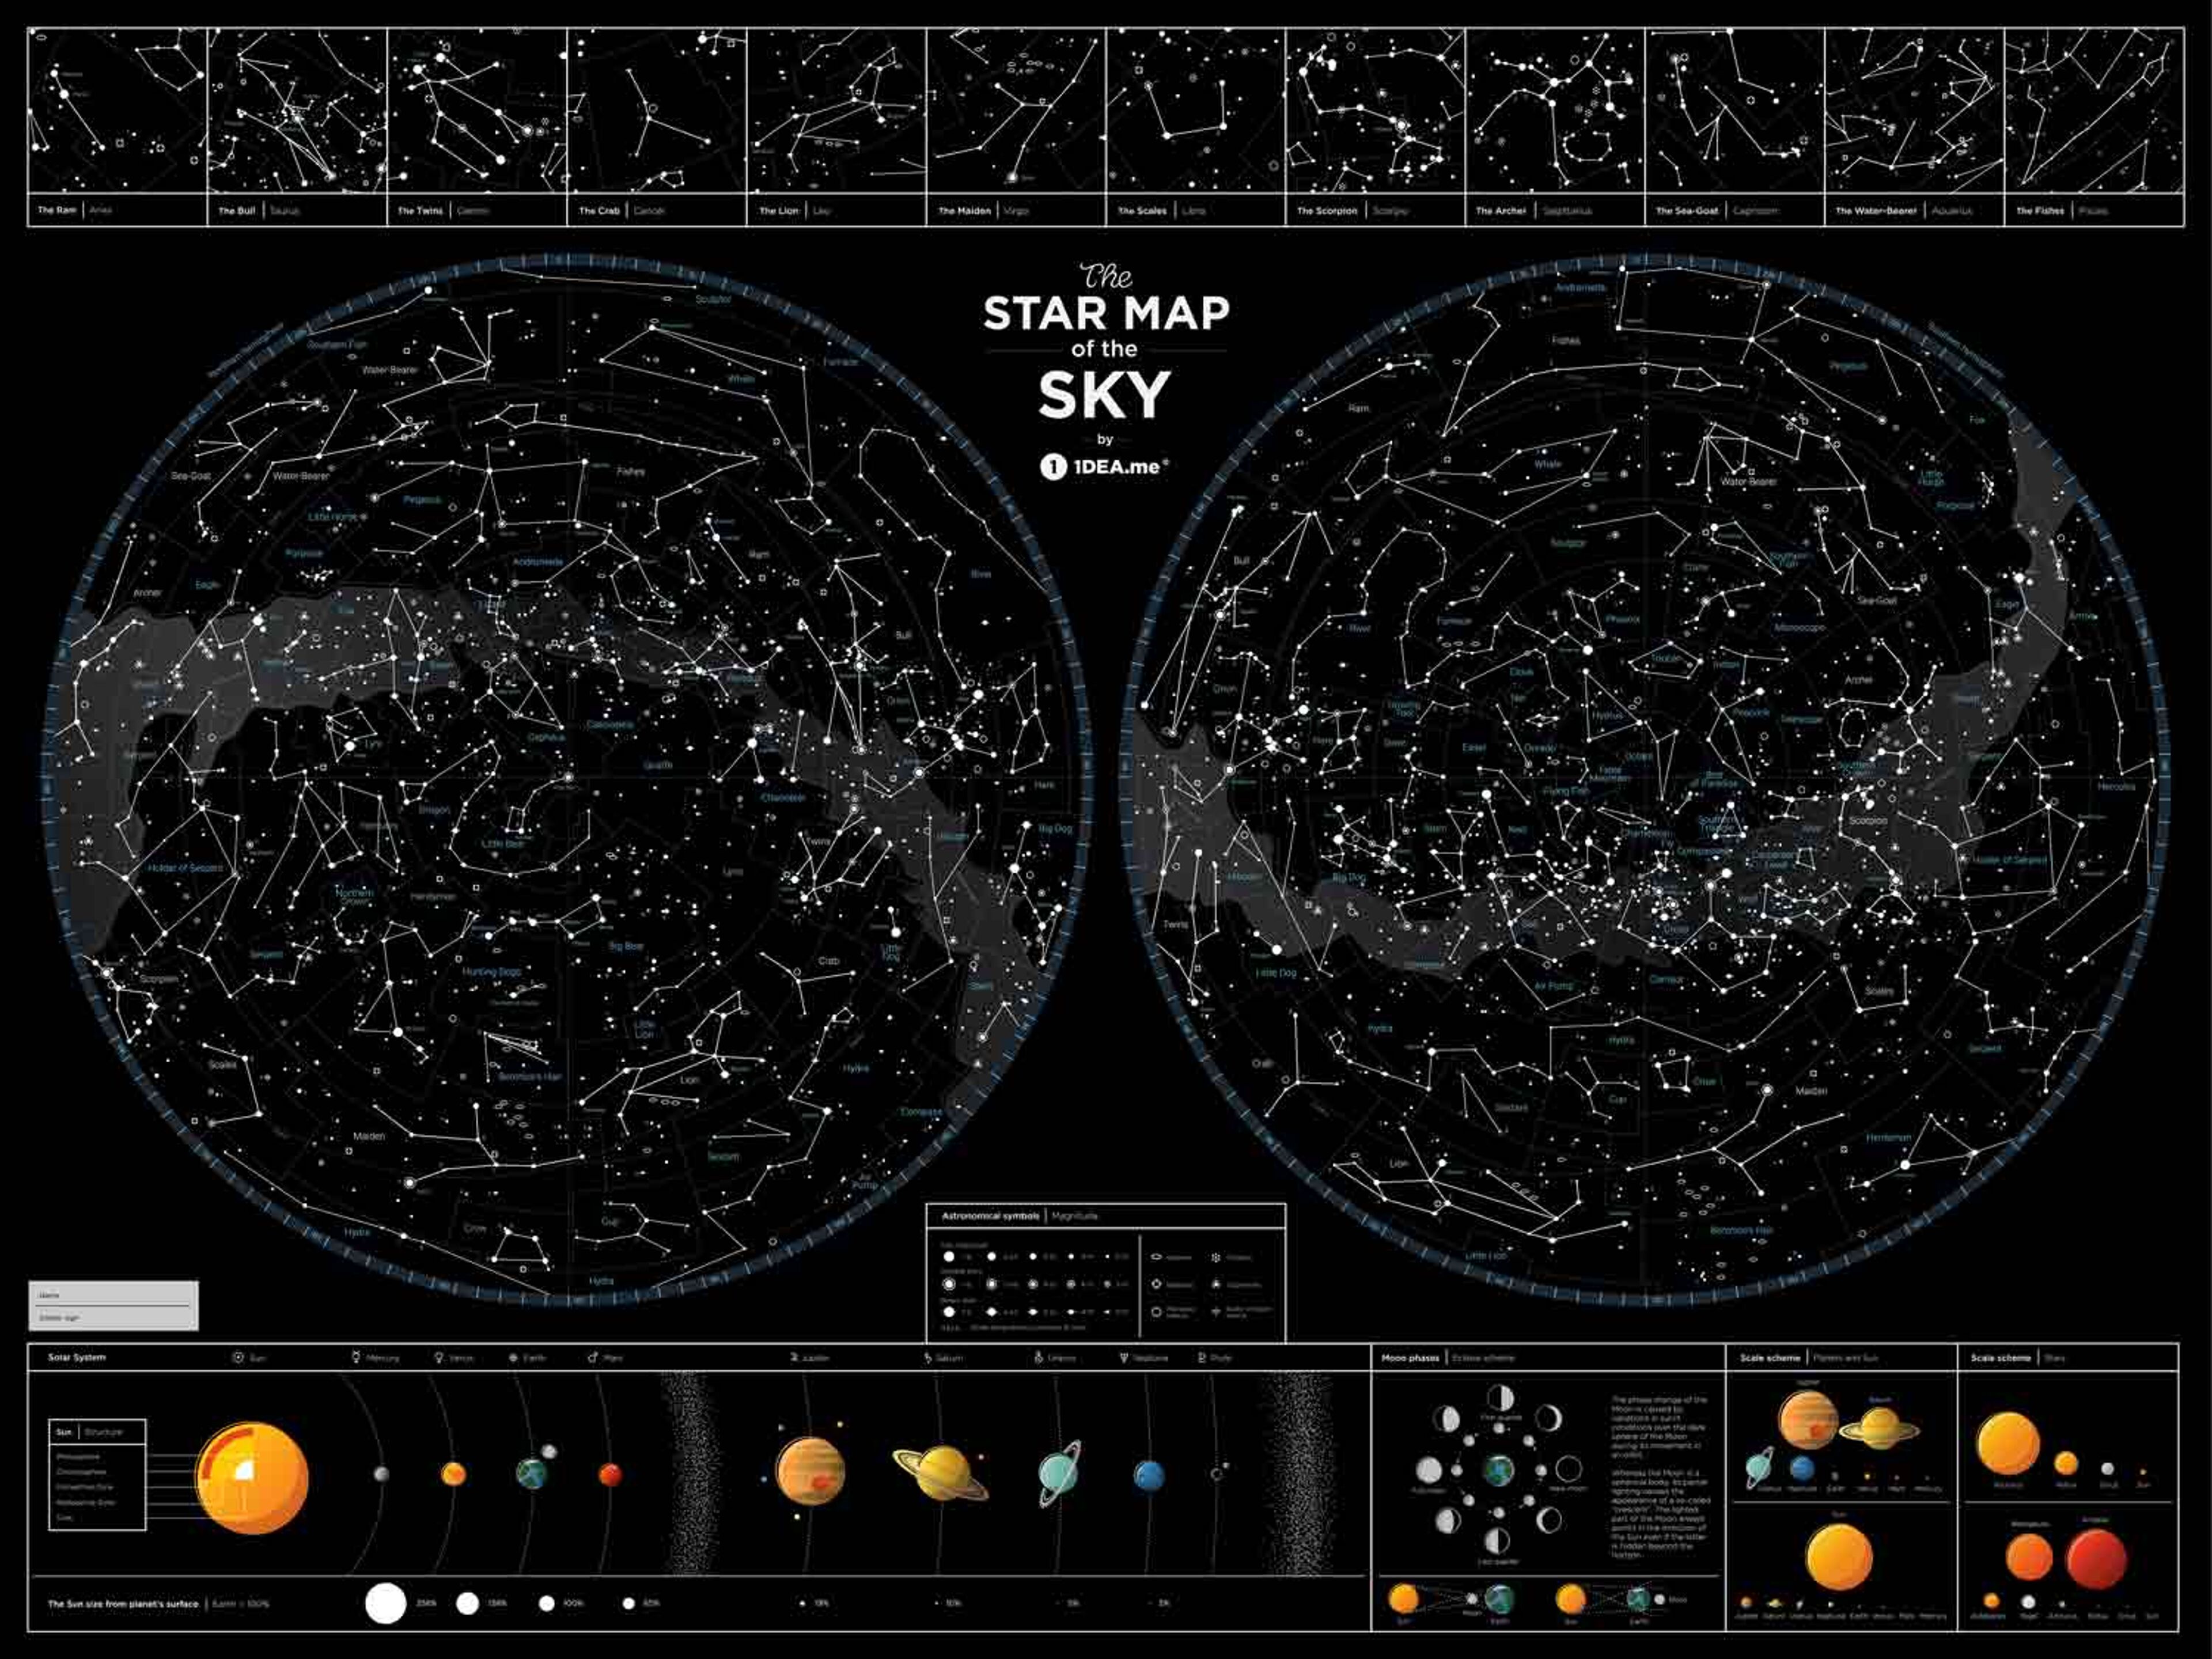 Hviezdna mapa nočnej oblohy (nestieracia)